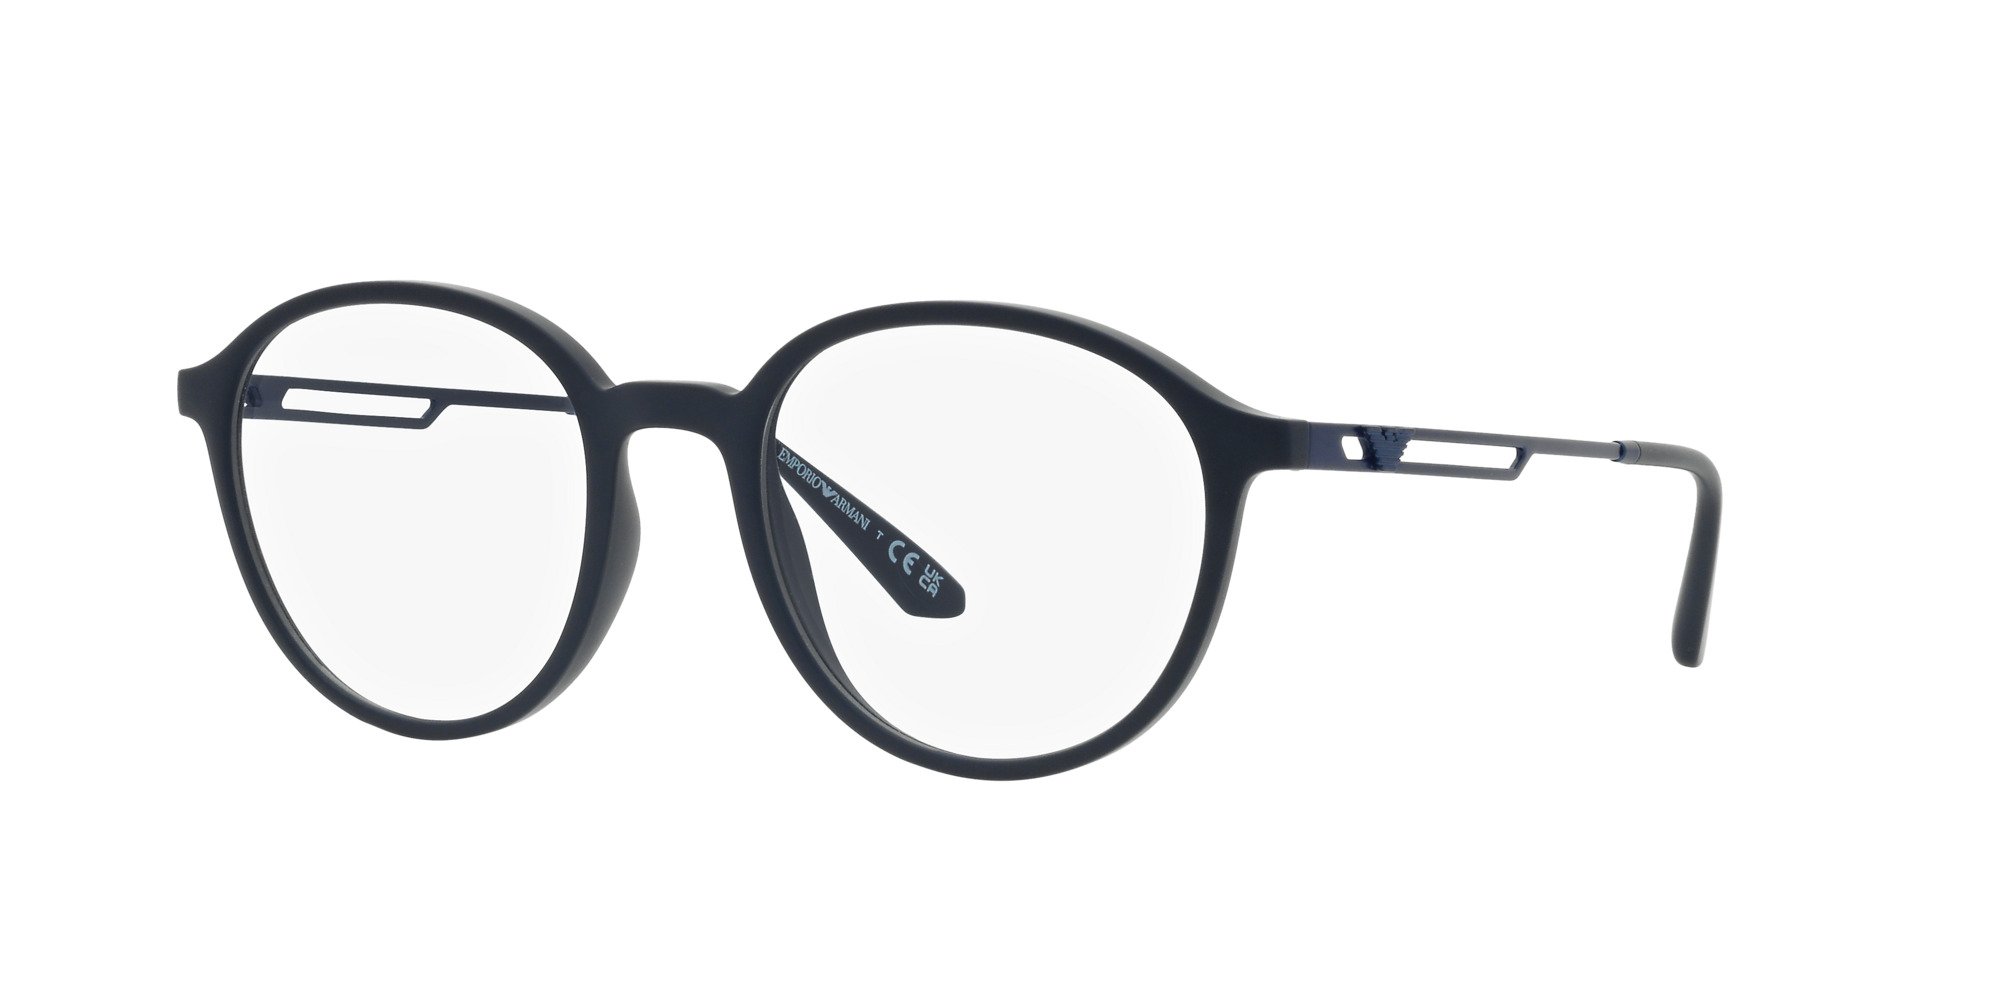 Das Bild zeigt die Korrektionsbrille EA3225 5088 von der Marke Emporio Armani in Blau.